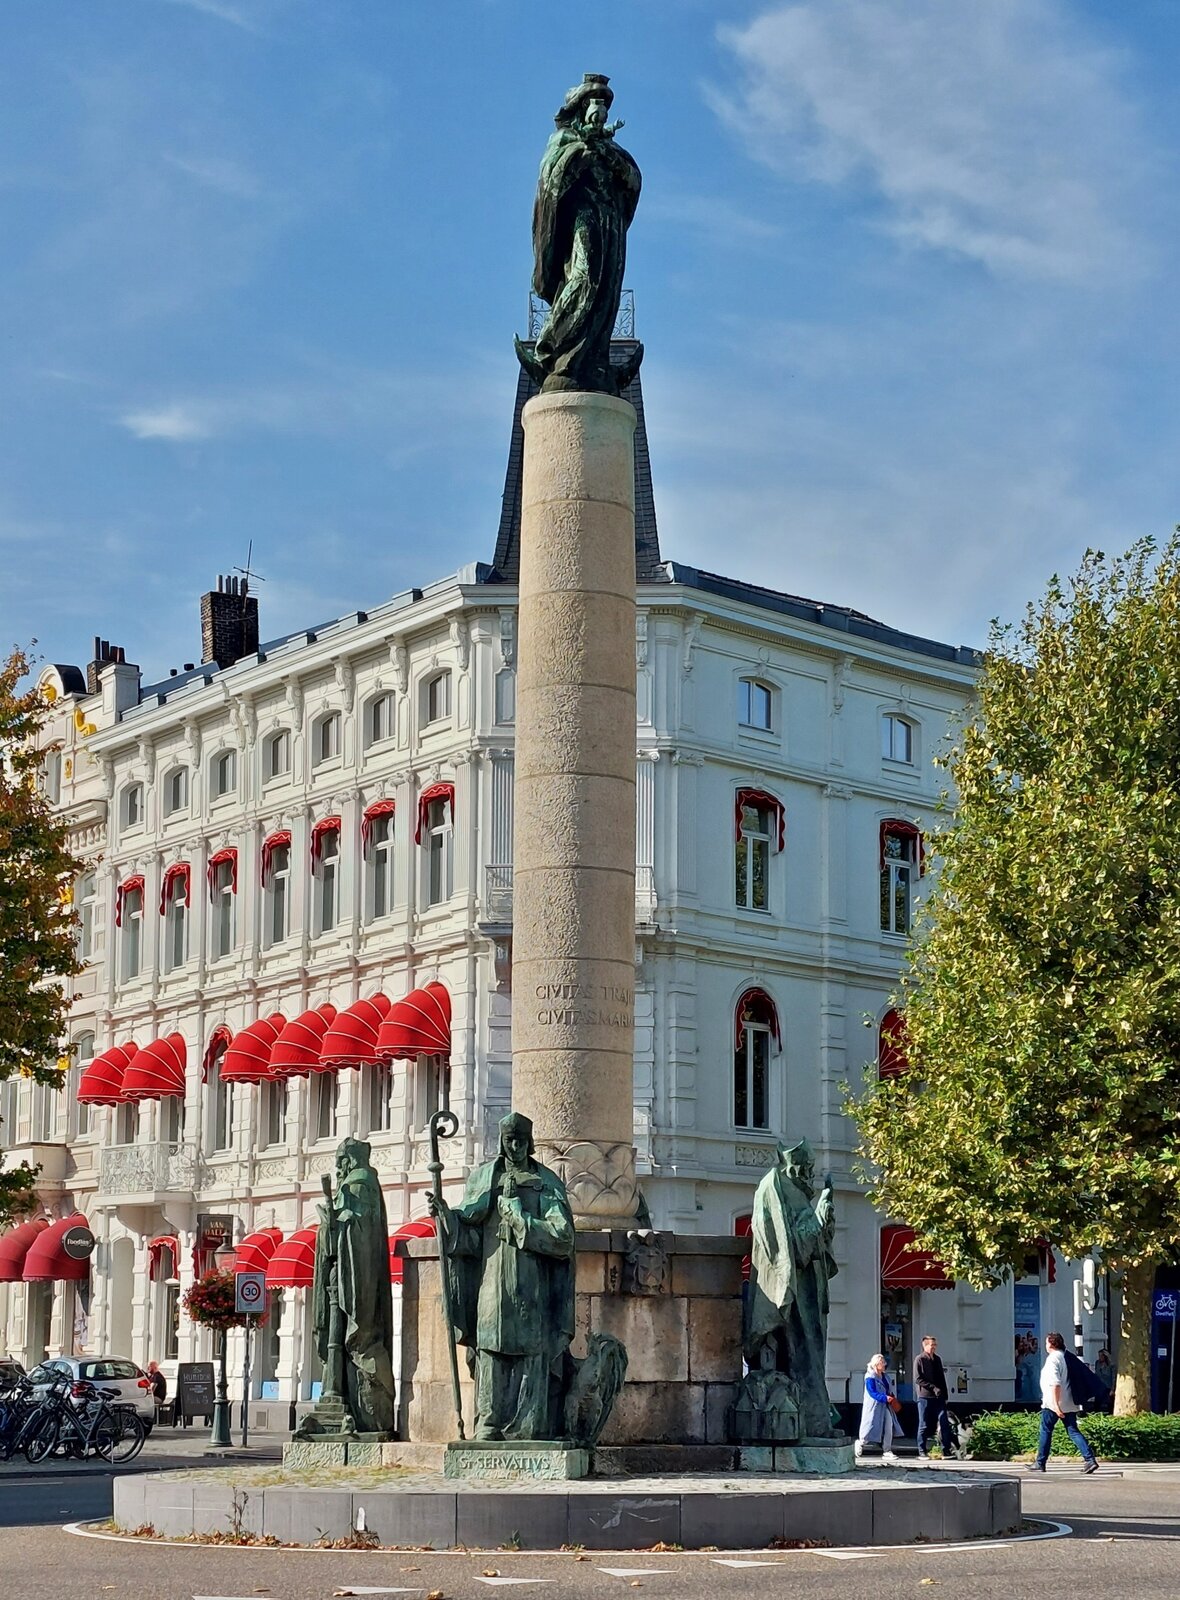 Das Maria Monument, wurde zu Ehren der Jungfrau Maria und den Vier heiligen Bischfen aus Maastricht errichtet. 
Es steht seit 1952 im Zentrum des Stadtteils Wyck in Maastricht. (Wikipedia) (Jeanny) 06.10.2023